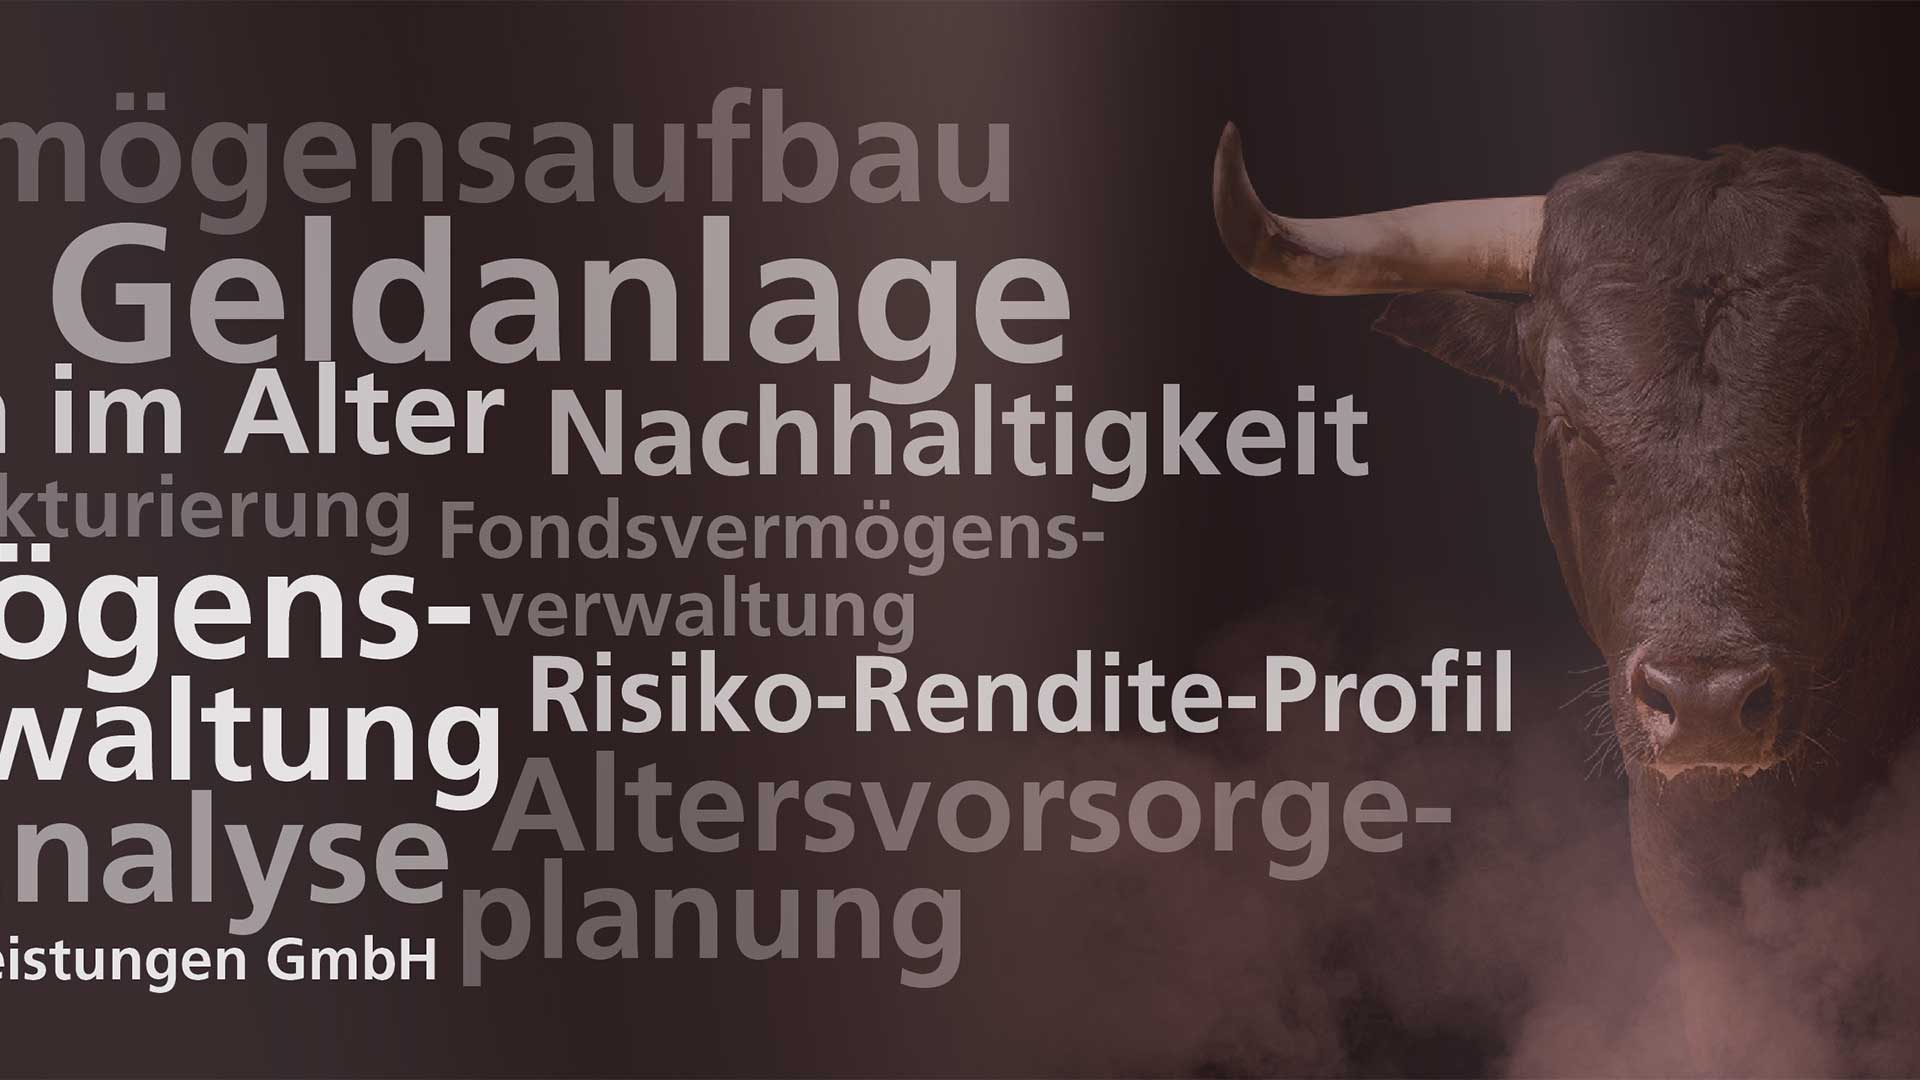 Plan F Finanzdienstleistungen GmbH